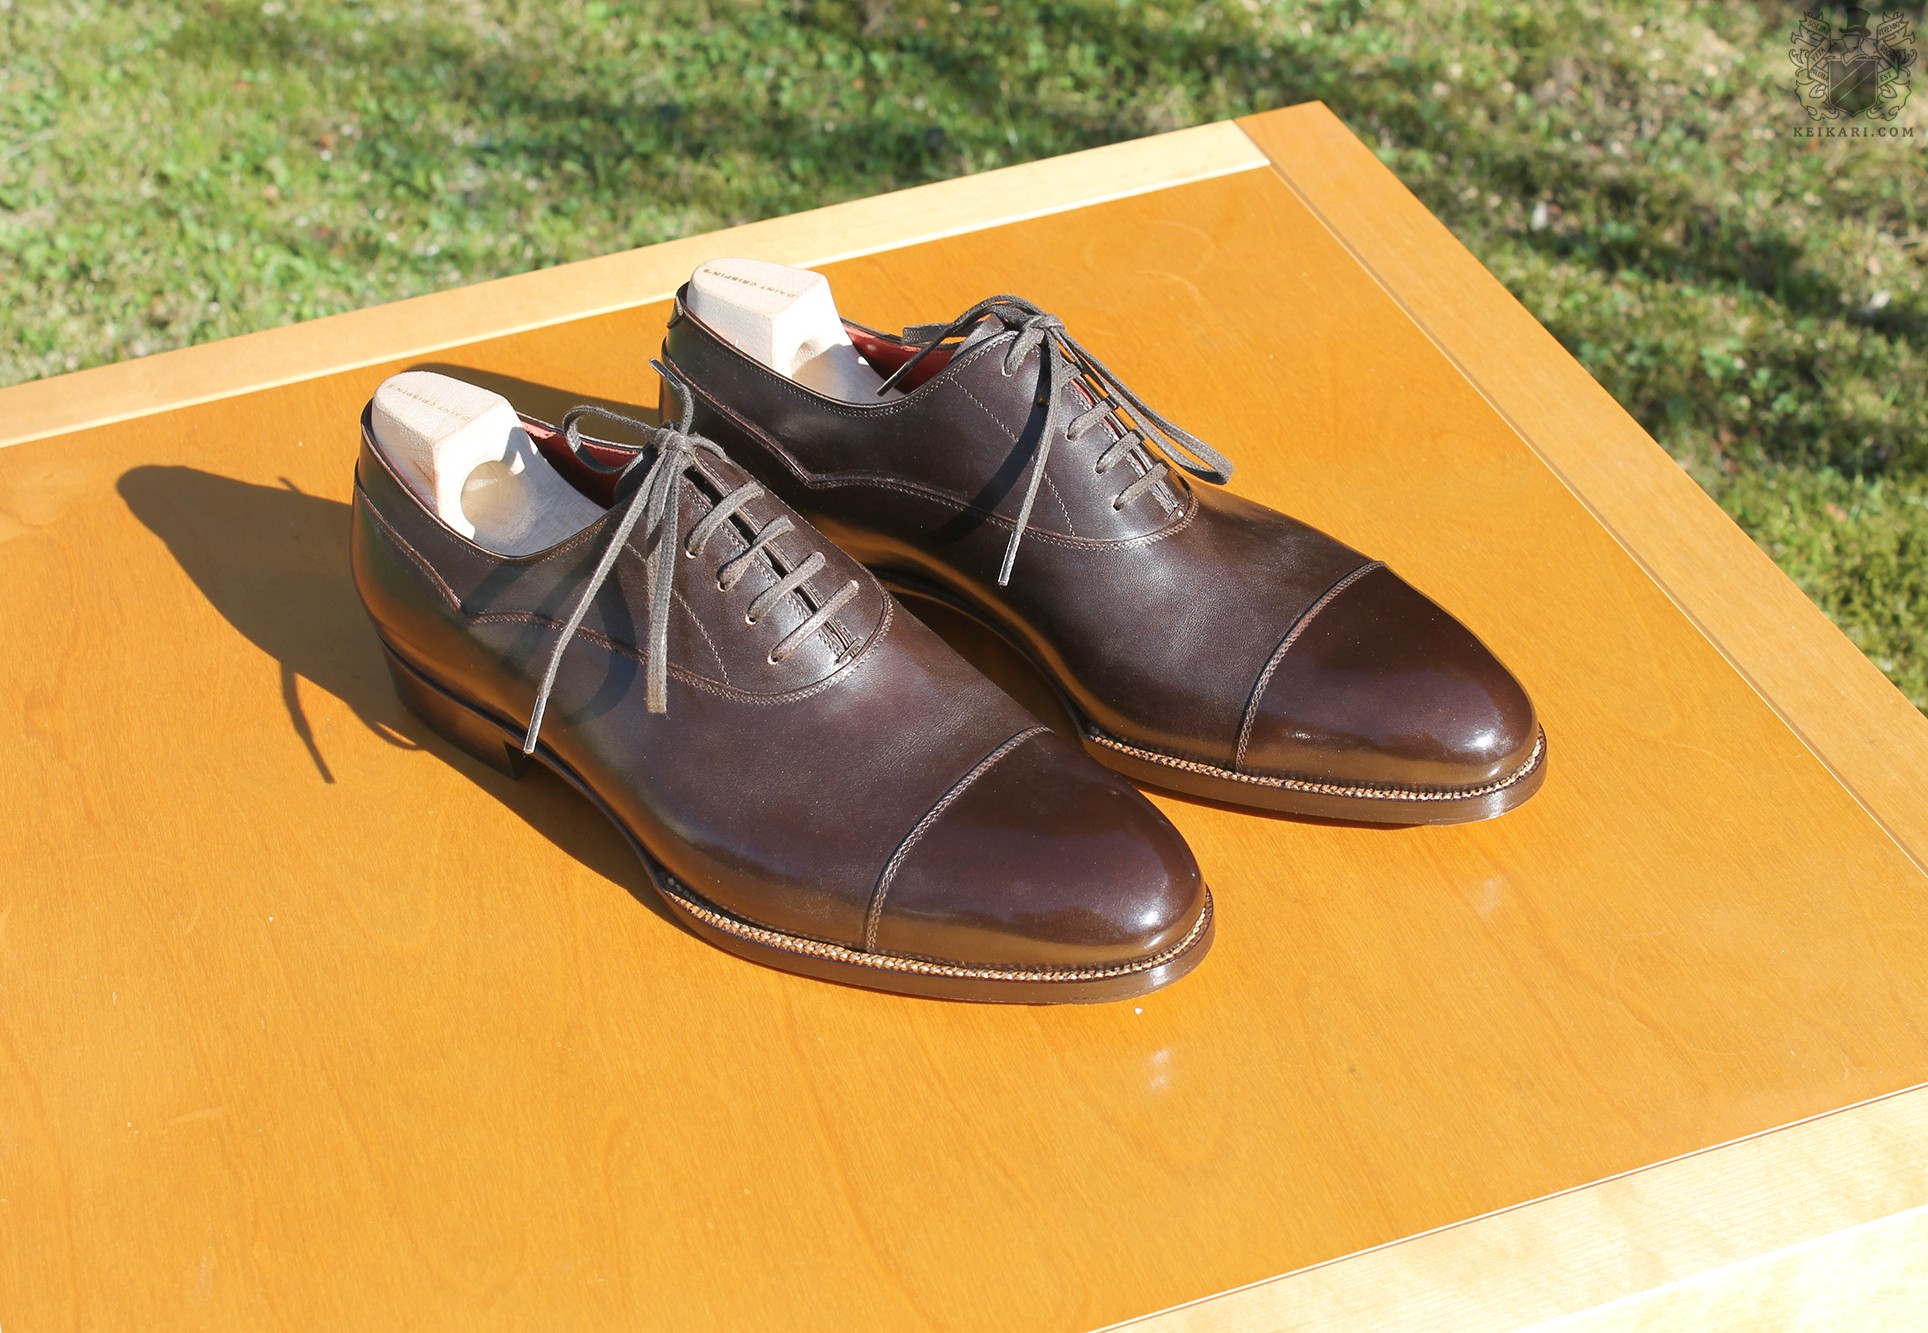 Anatomy_of_Saint_Crispin's_shoes_at_Keikari_dot_com07